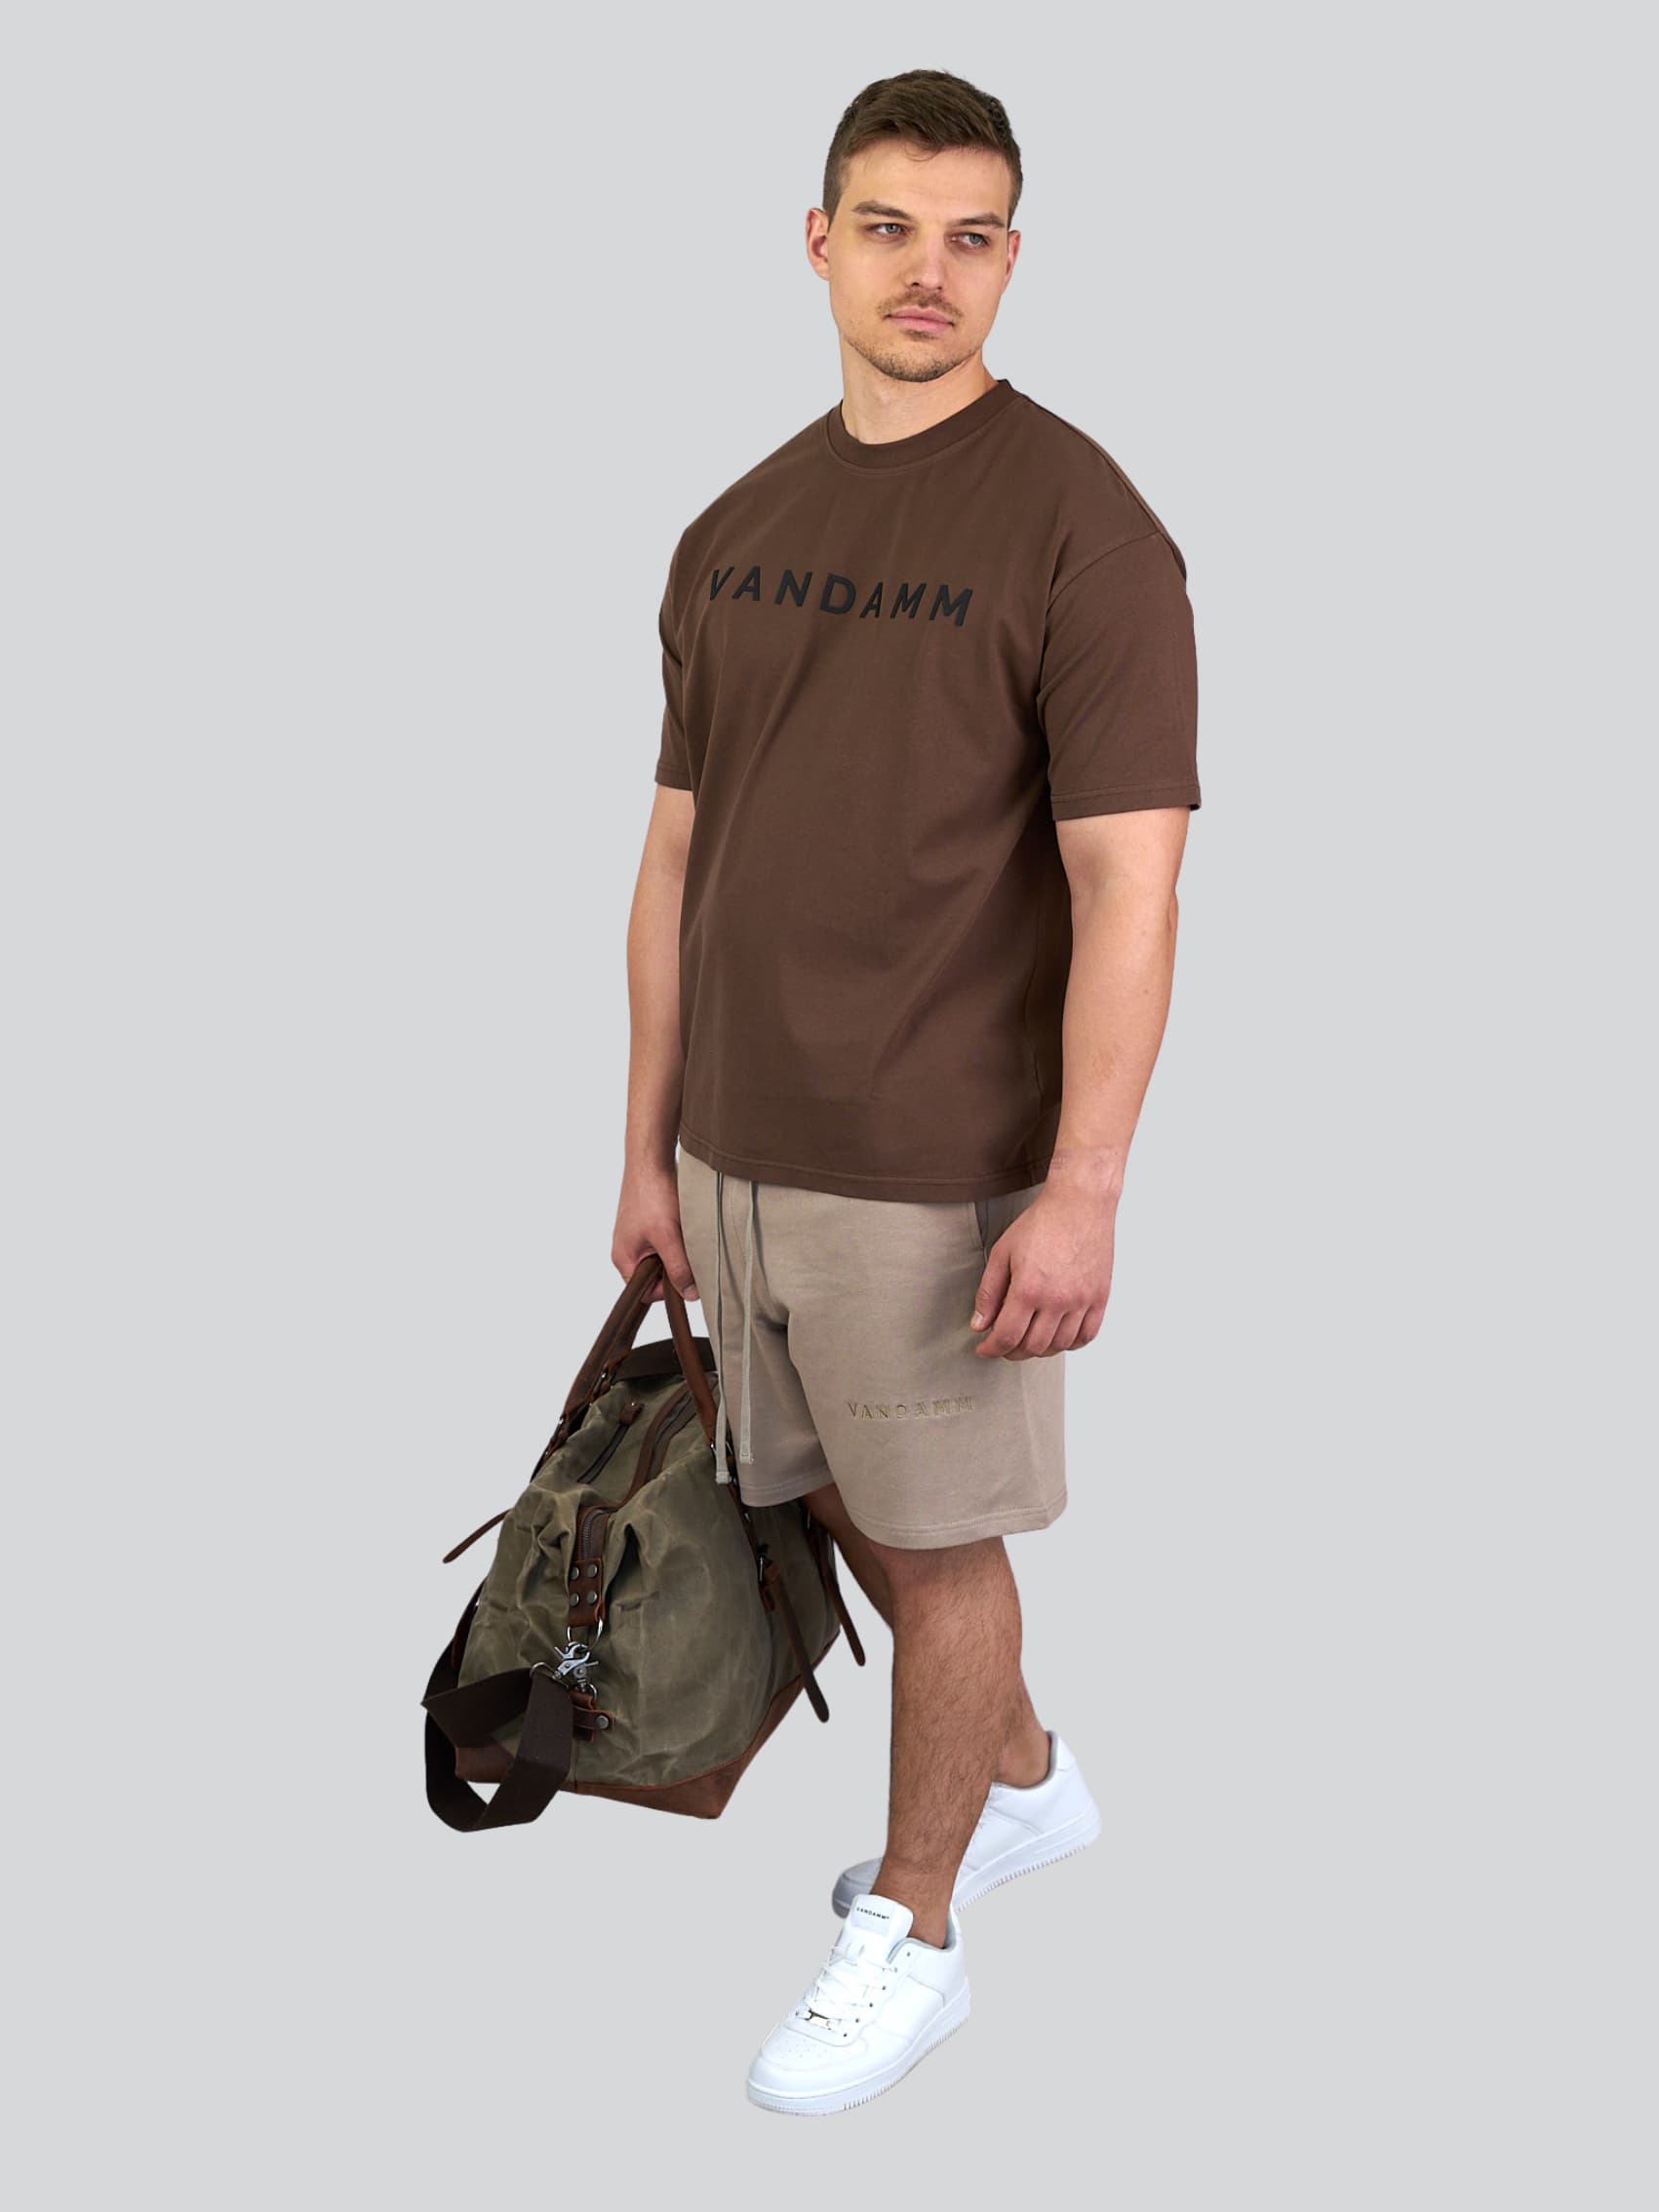 VANDAMM® Sportswear & Lifestyle T-Shirt Chocolate Weekender Canvas Tasche